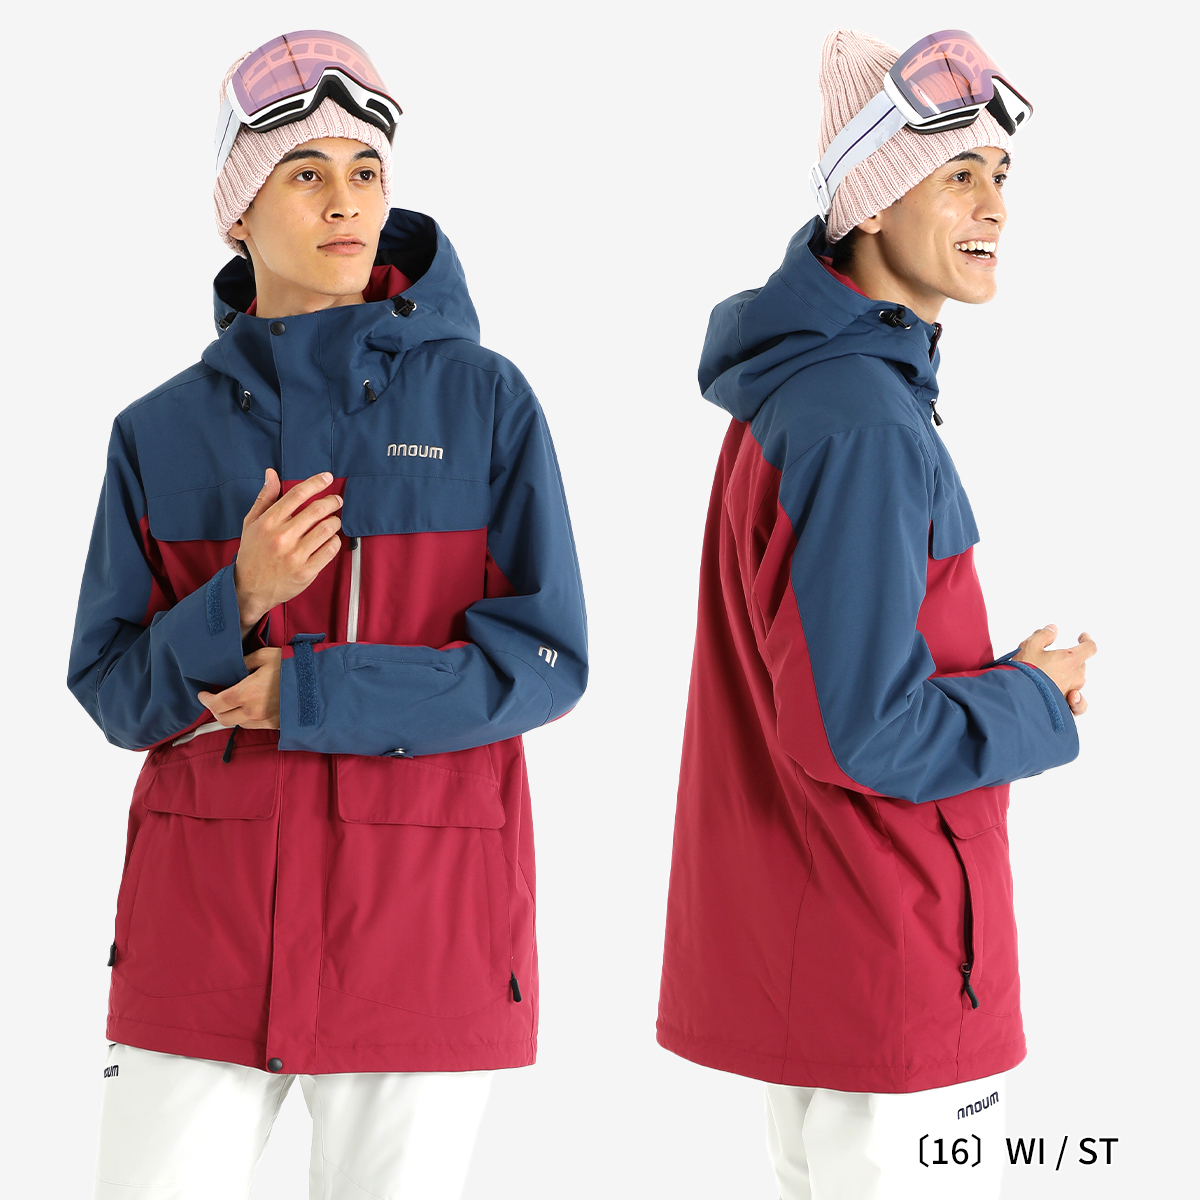 スキーウェア スノーボードウェア スキーウエア メンズ レディース 上下セット NNOUM ノアム 耐水圧20000ml 軽量 防寒 保温 裾丈調節  ジャケット パンツ